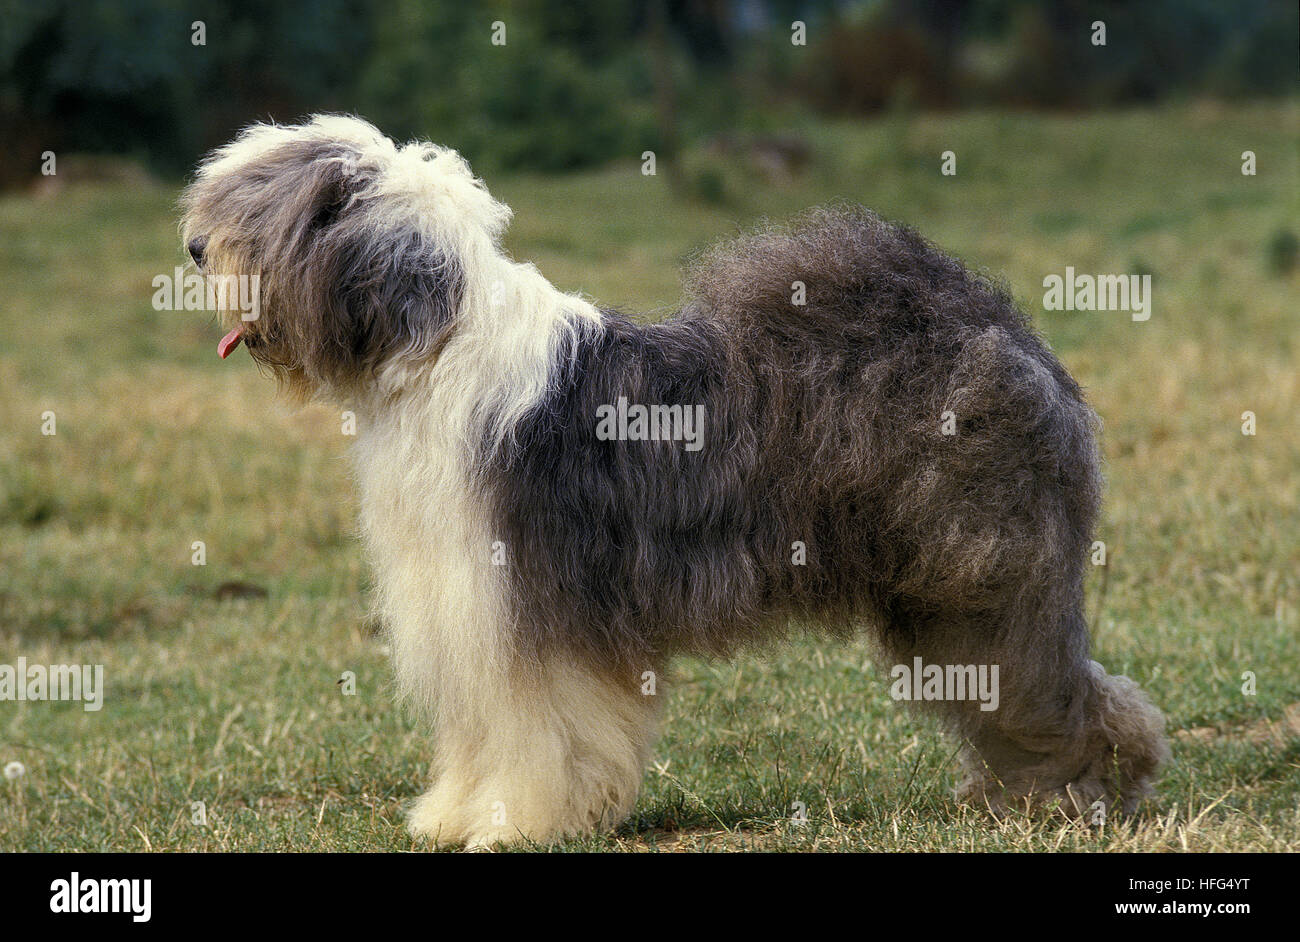 Mais de 3 imagens grátis de Old English Sheepdog e Cachorro - Pixabay